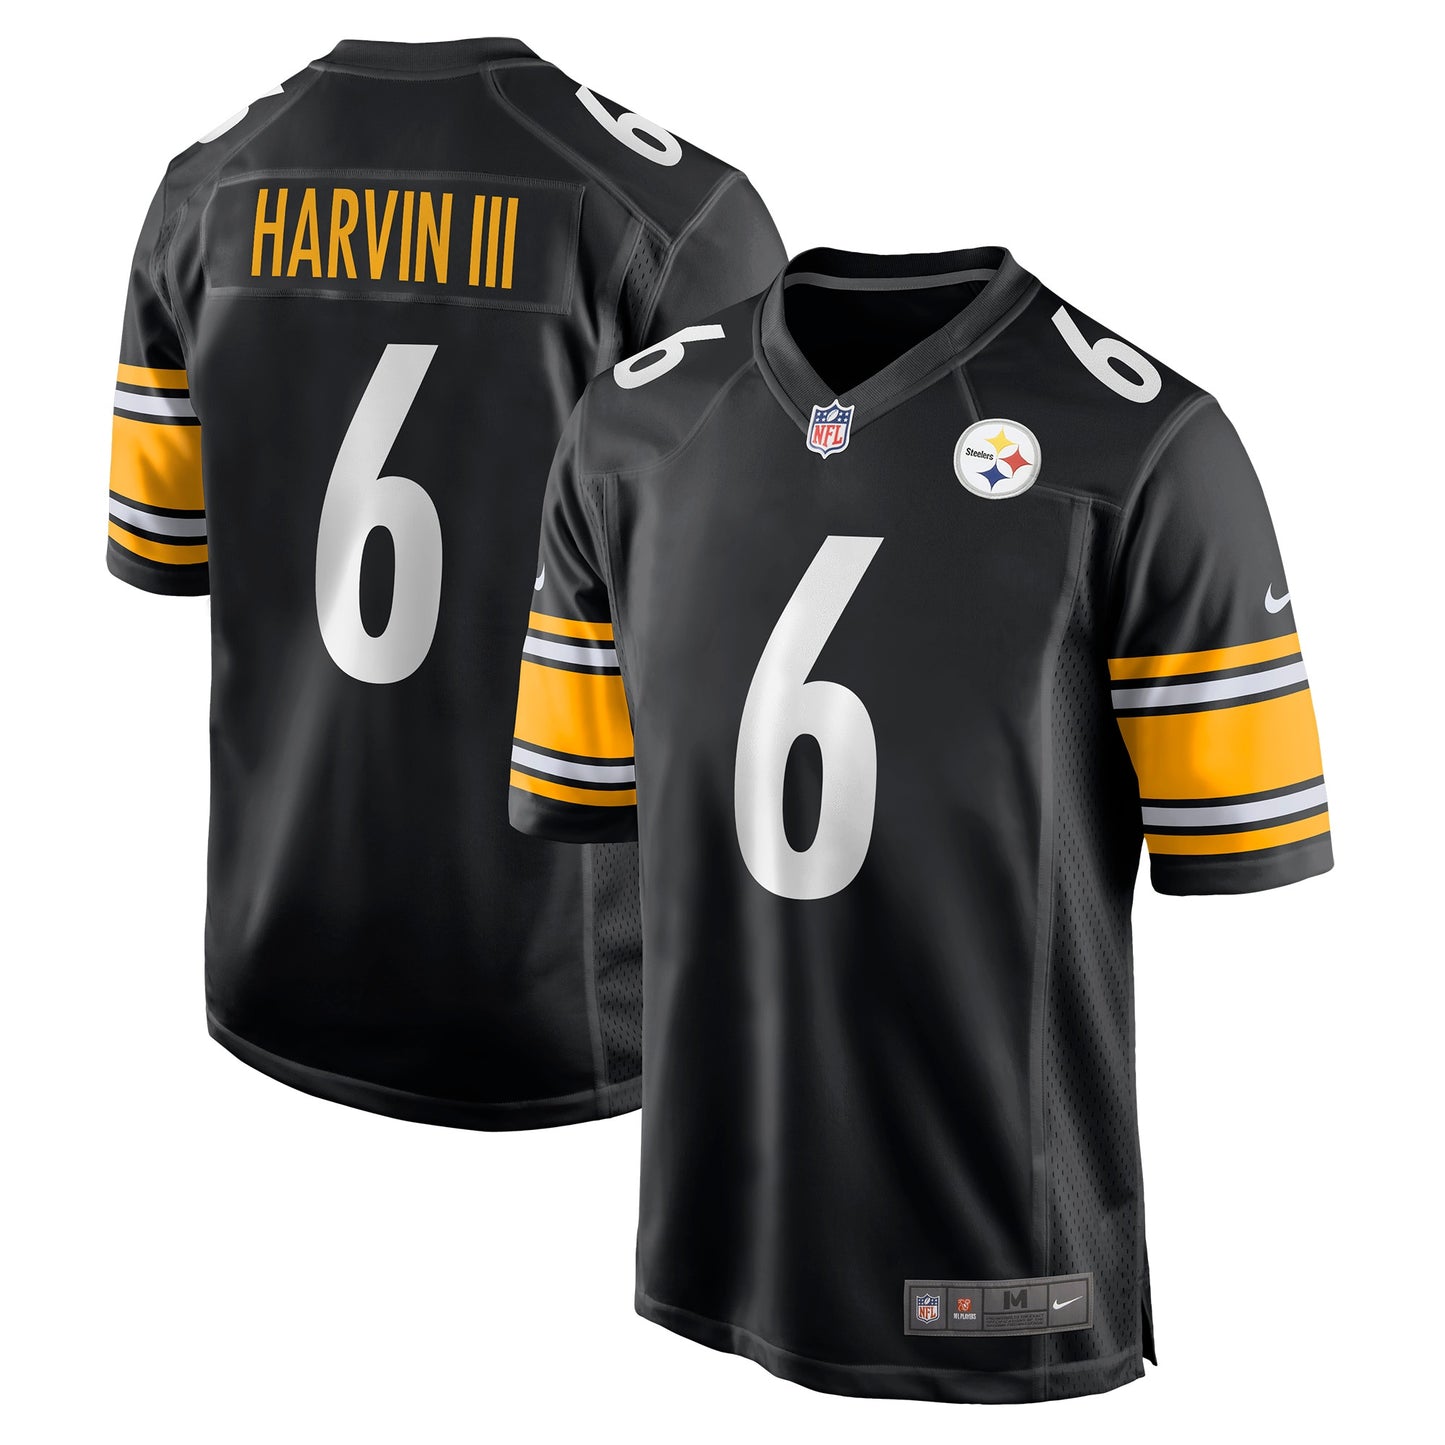 Pressley Harvin III Pittsburgh Steelers Nike Game Jersey - Black